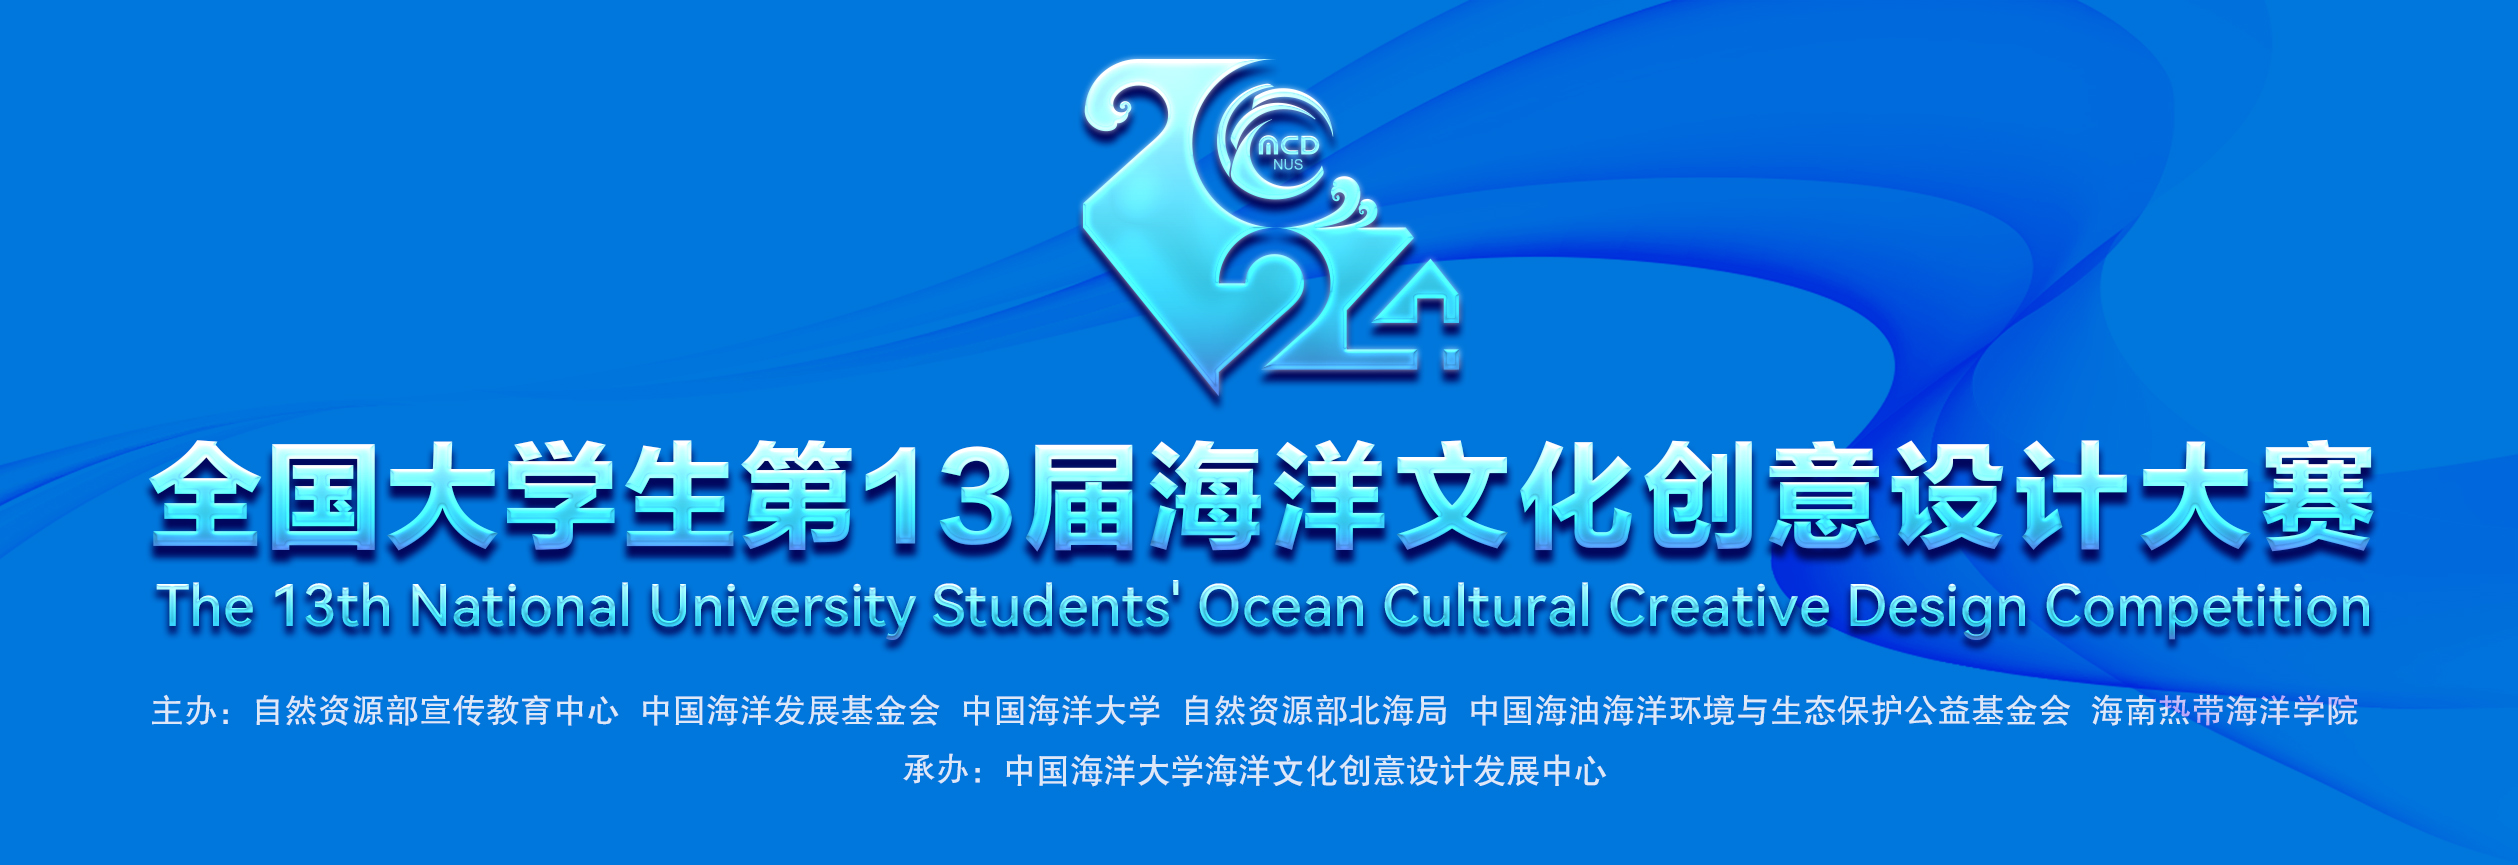 全国大中学生第13届海洋文化创意设计大赛